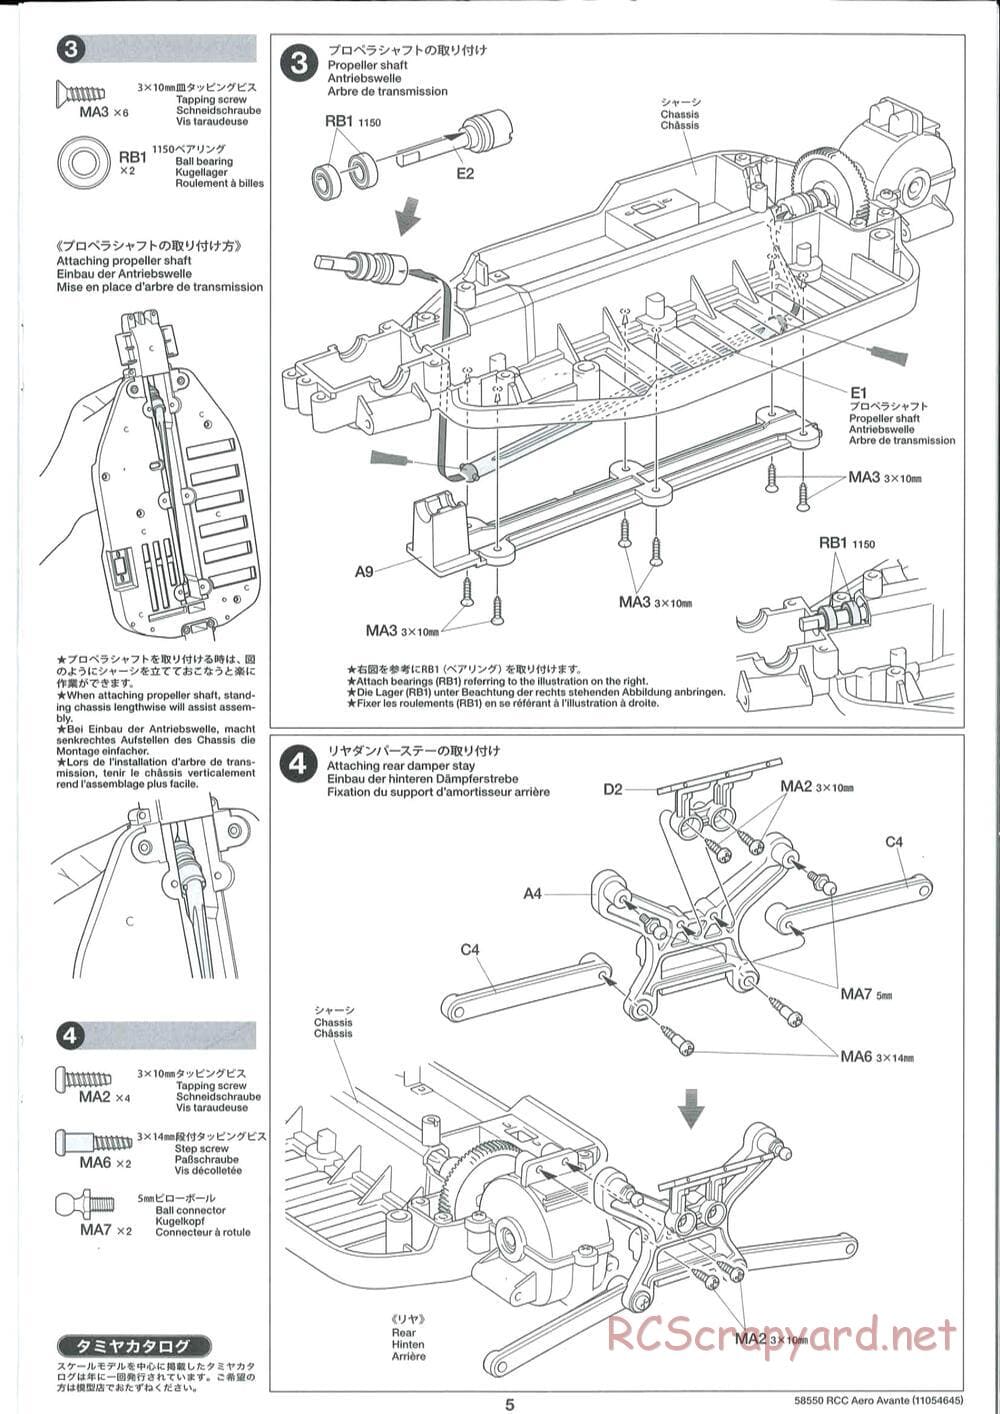 Tamiya - Aero Avante Chassis - Manual - Page 5